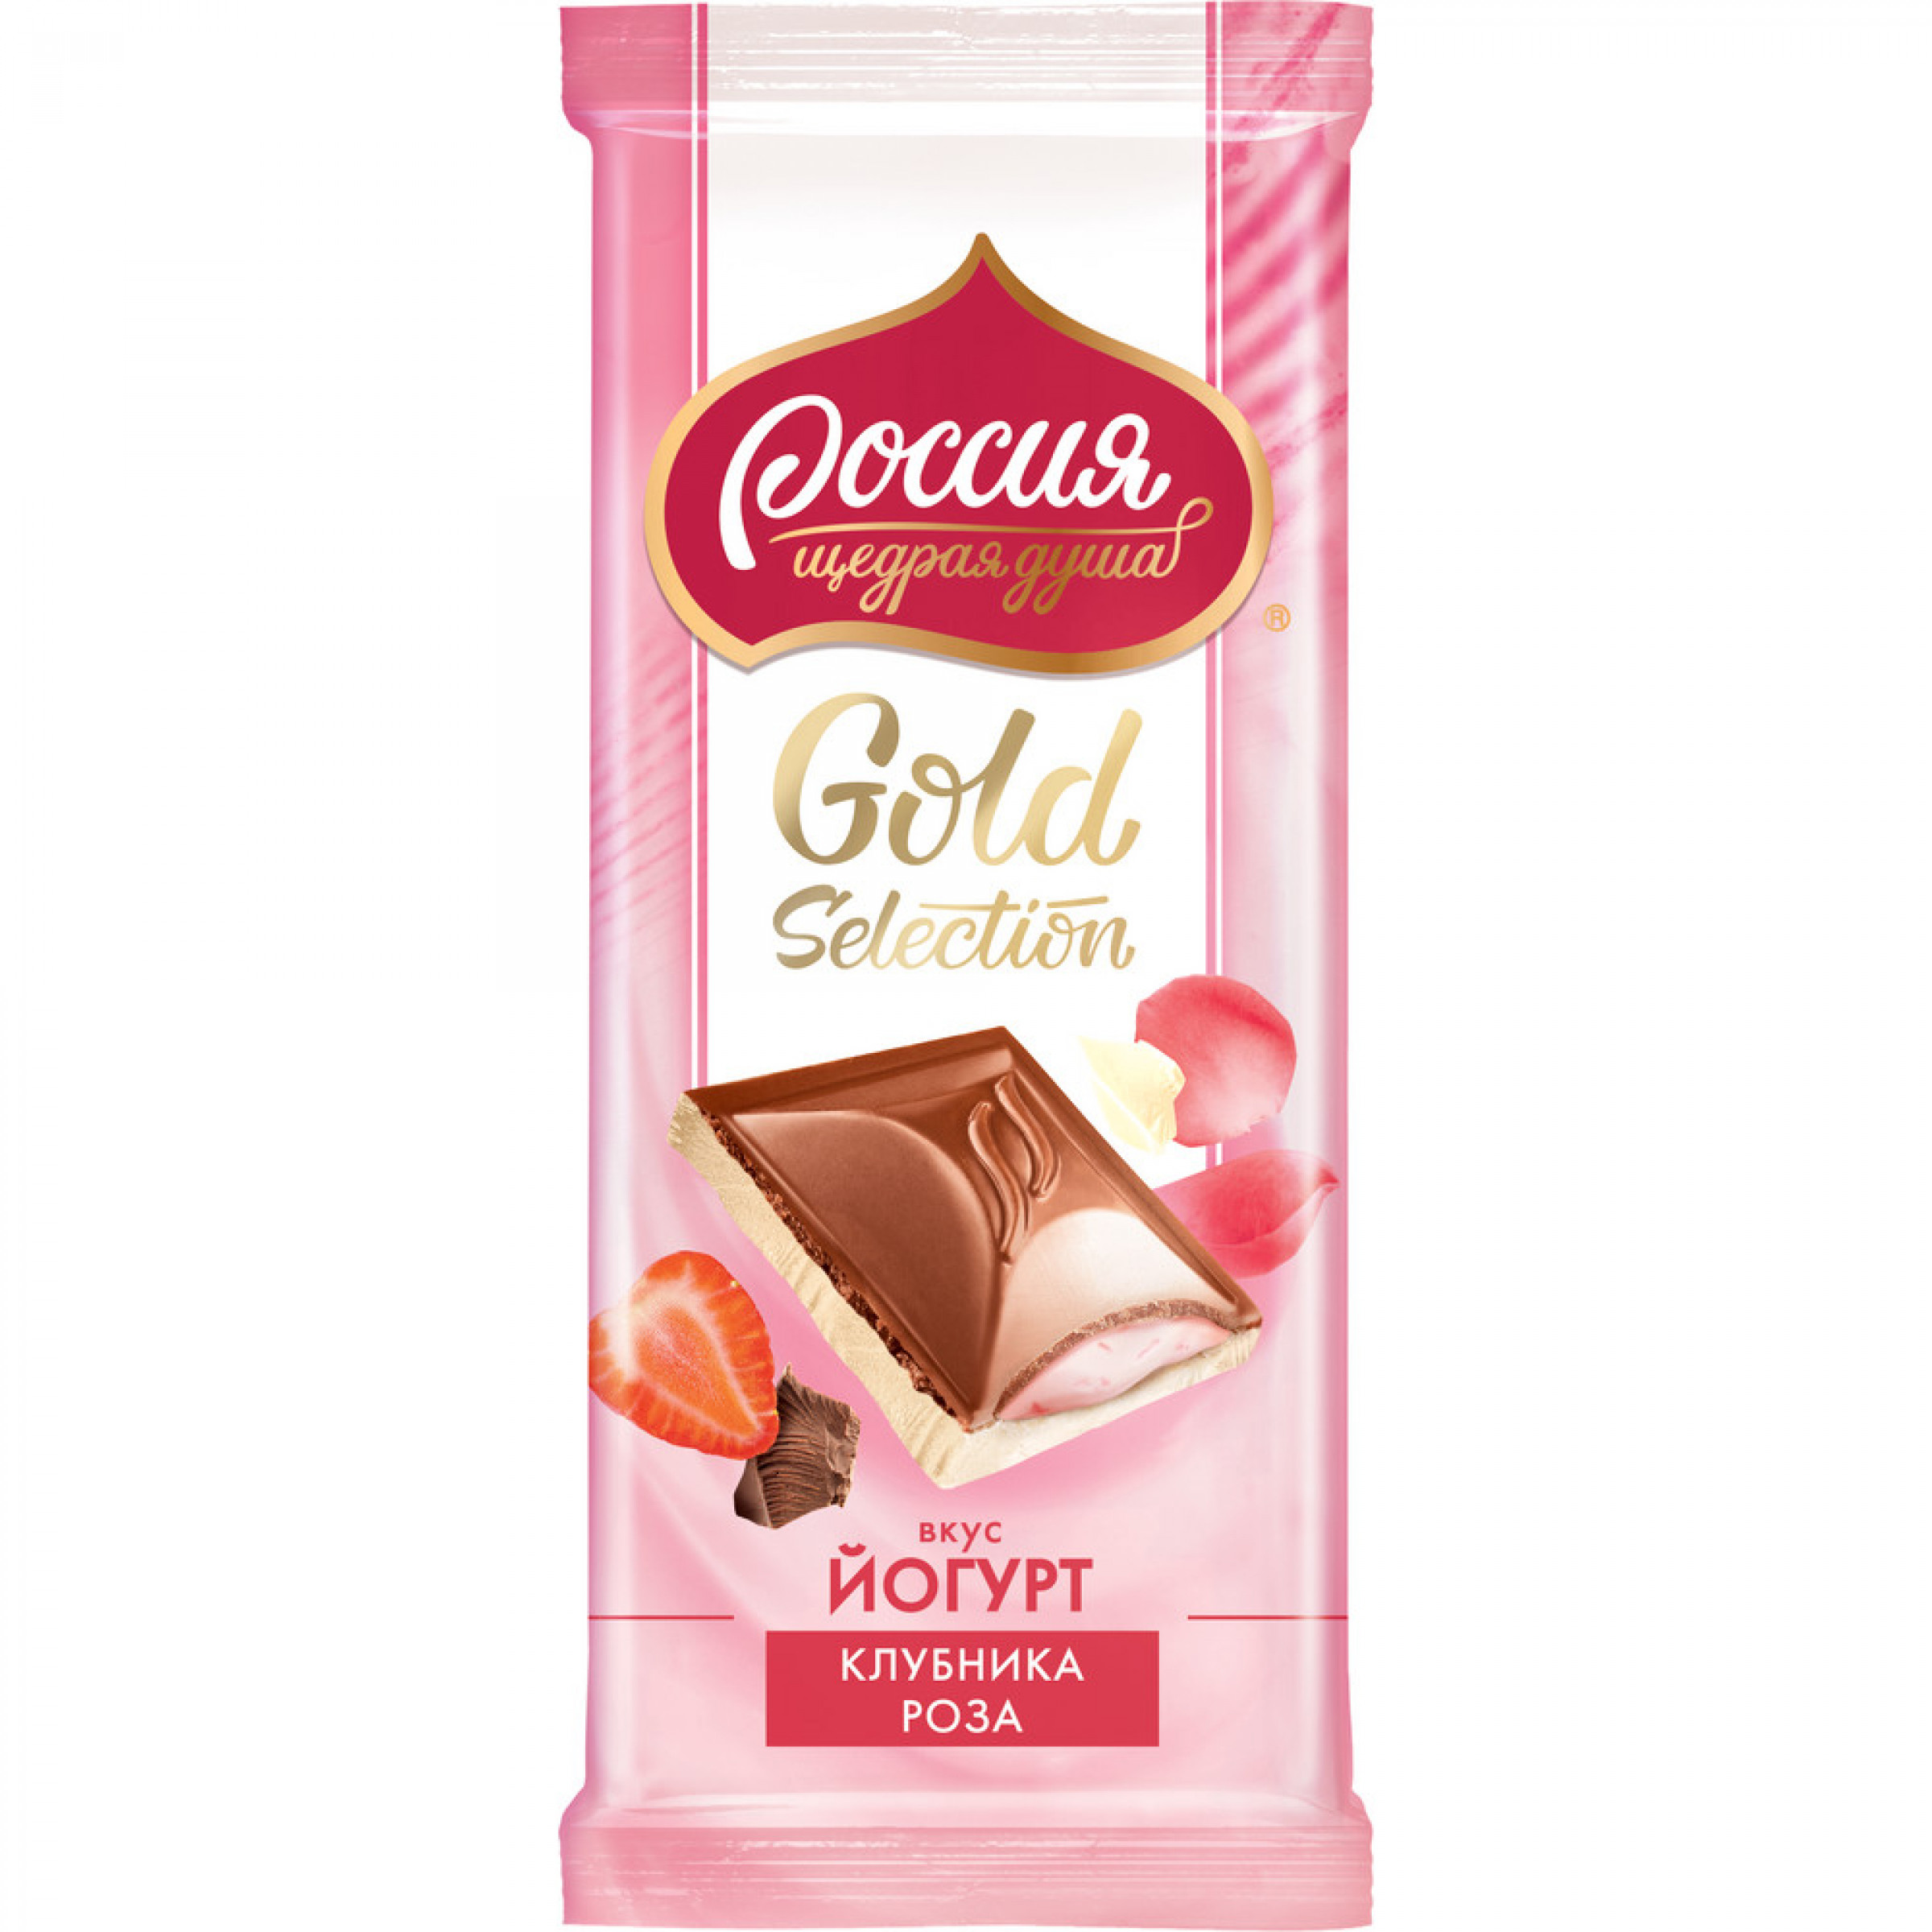 Шоколад молочный со вкусом йогурта, клубники и розы, Россия - Щедрая душа, 82 г